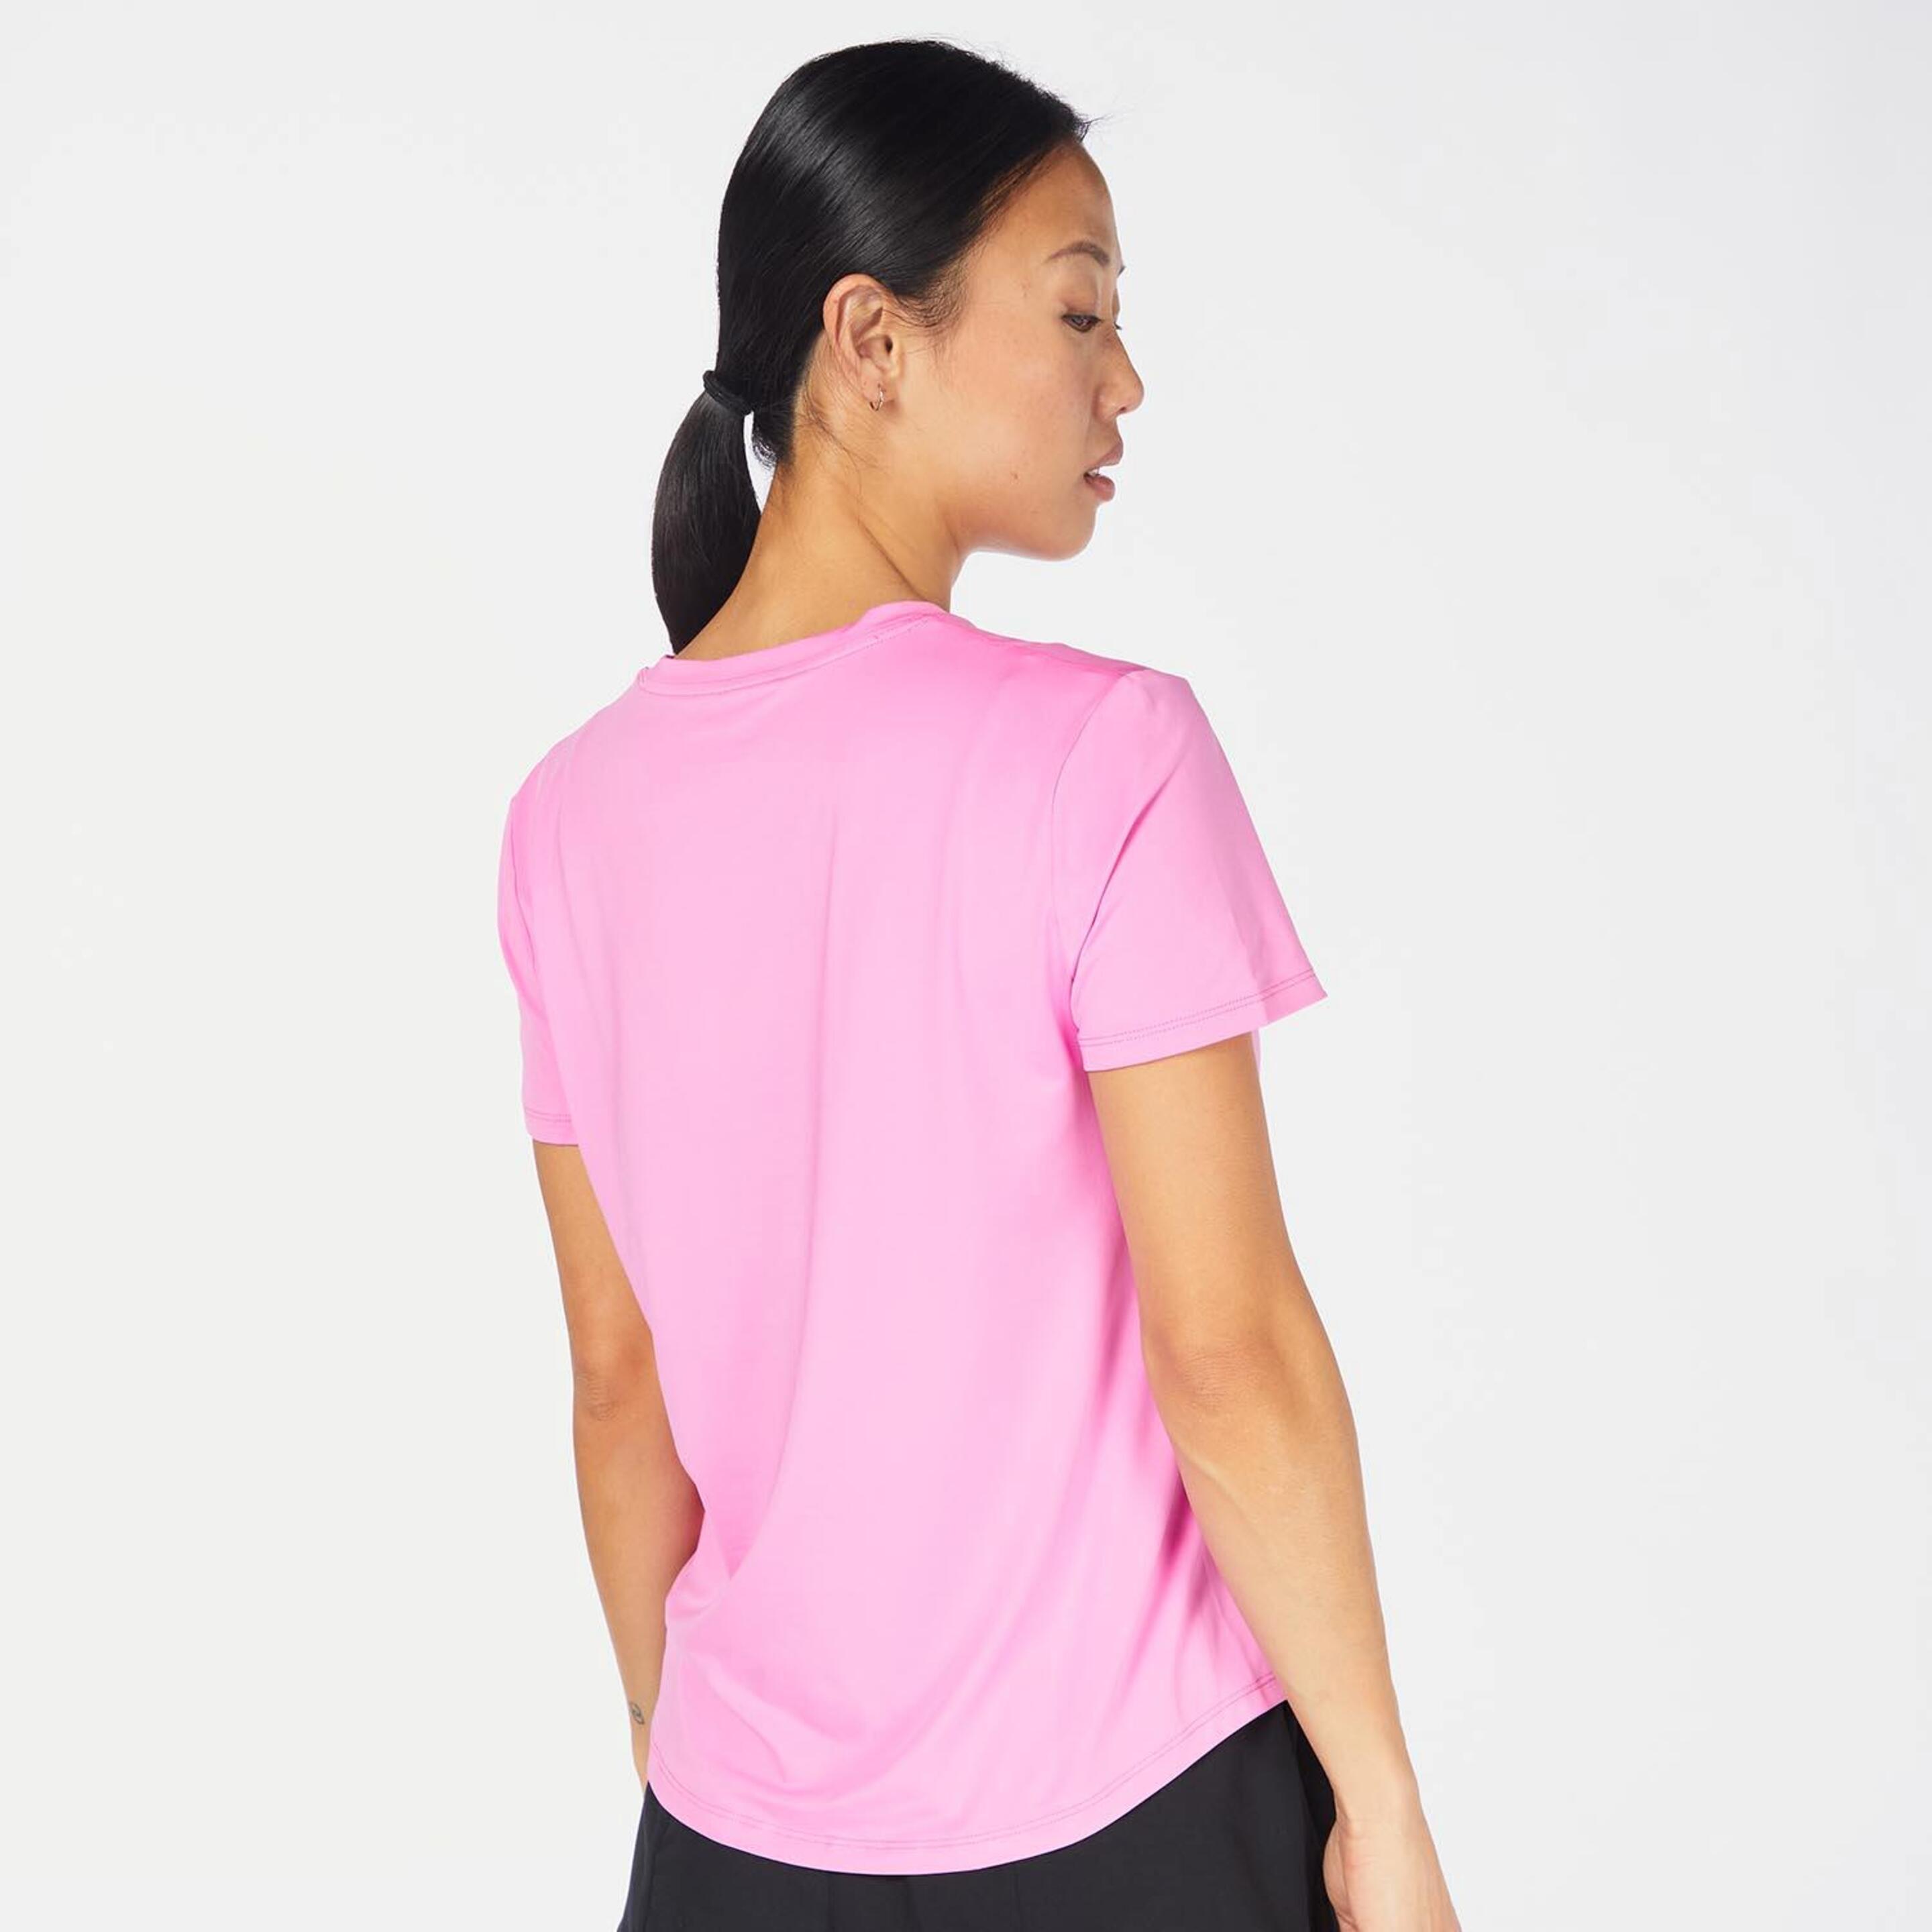 Nike One Swoosh - Rosa - Camiseta Running Mujer  | Sprinter